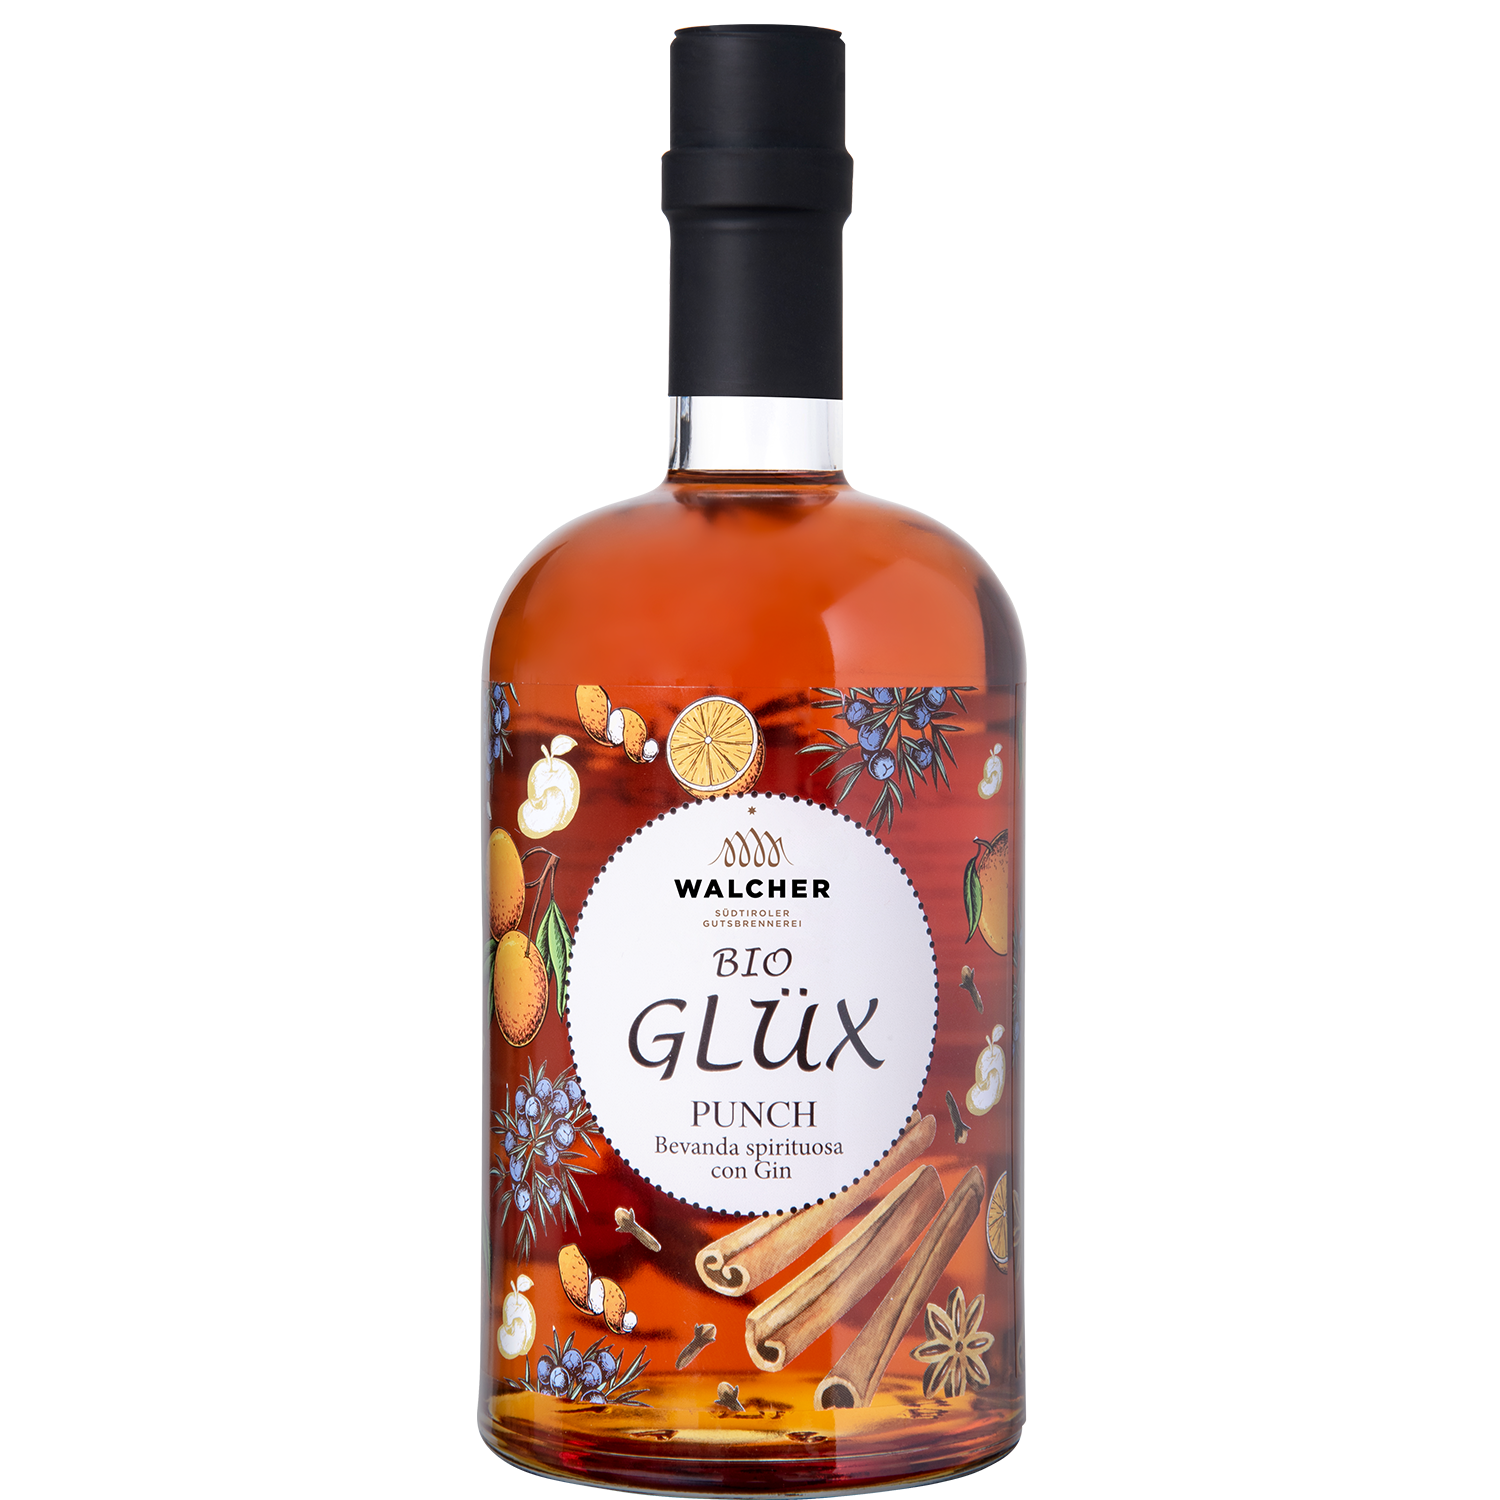 Glüx Bio - Punch mit Gin in 700ml Flasche der Brennerei Walcher